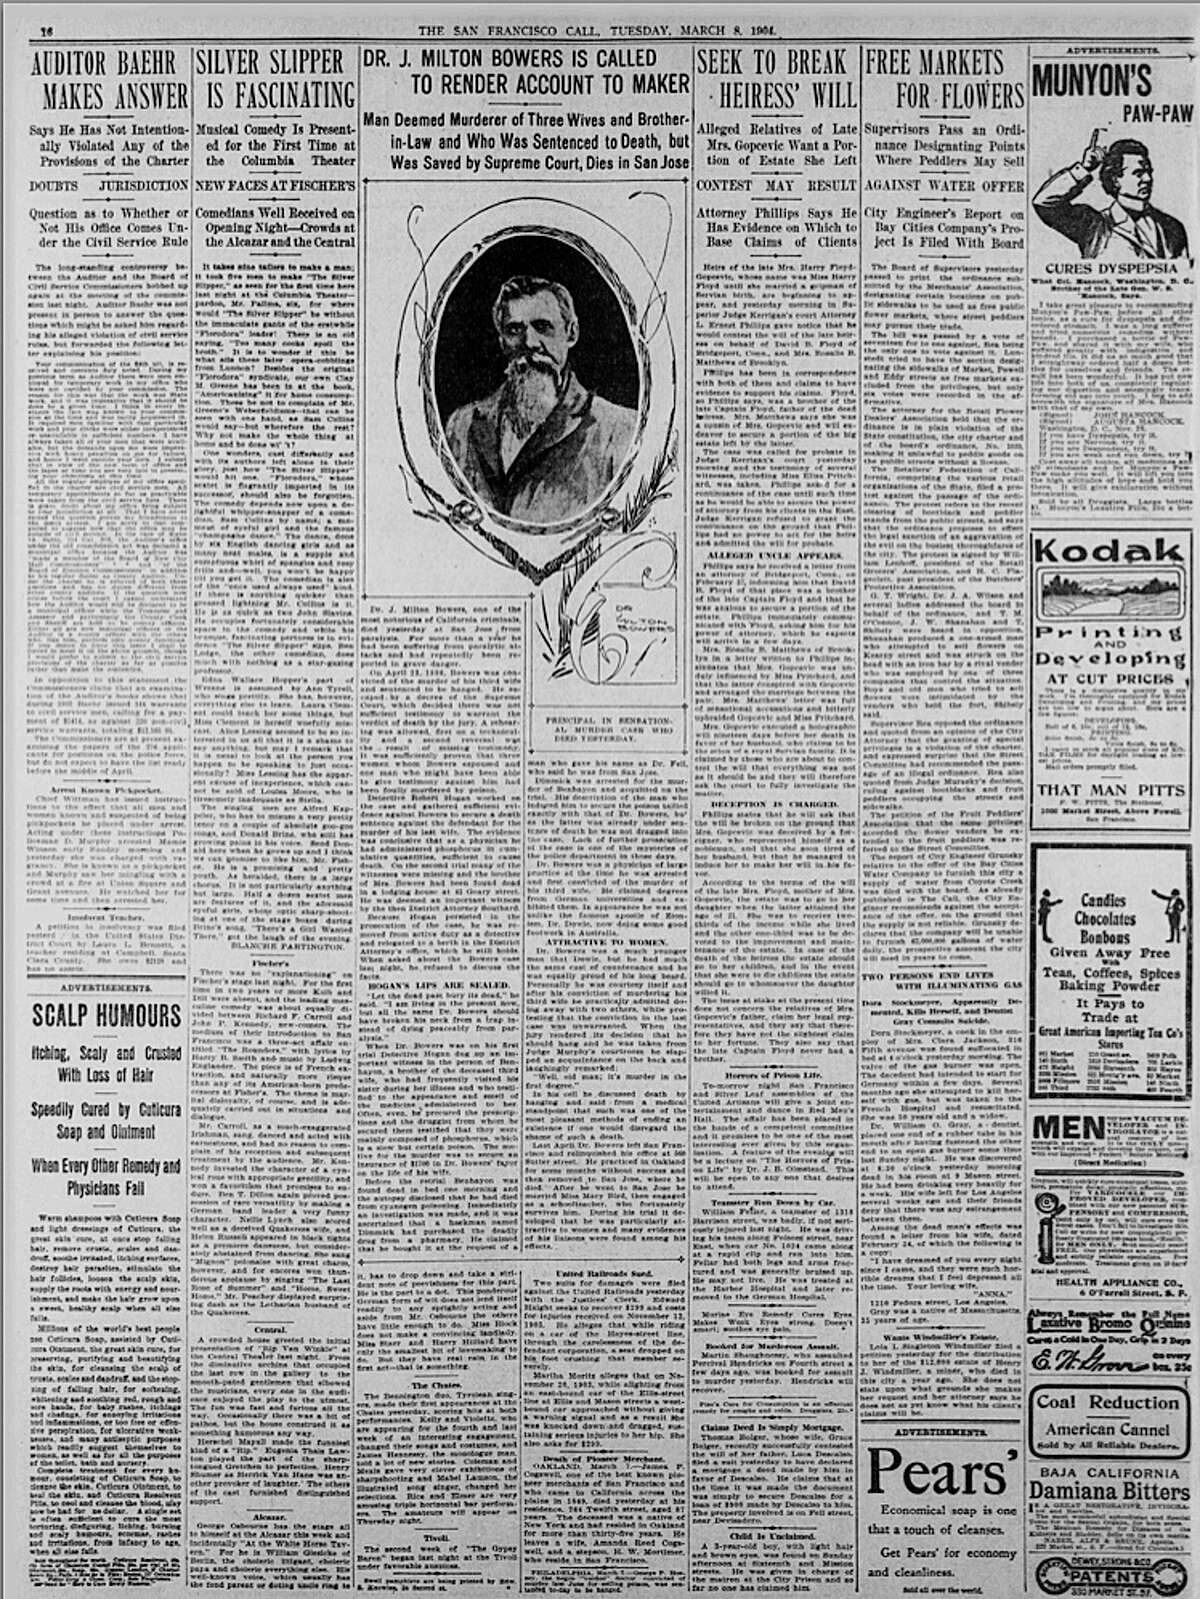 摘自《旧金山通讯》1908年3月8日。关于米尔顿·鲍尔斯之死的故事。1923年1月1日之前出版的所有报纸都属于公共领域，因此没有使用限制。如果出版，引用，或以其他方式复制这个集合的图像，我们要求您按照以下顺序命名CDNC:加州大学河滨分校书目研究和研究中心的加州数字报纸集合。1904年3月8日旧金山打来的电话。1923年1月1日之前出版的所有报纸都属于公共领域，因此没有使用限制。如果出版，引用，或以其他方式复制这个集合的图像，我们要求您按照以下顺序命名CDNC:加州大学河滨分校书目研究和研究中心的加州数字报纸集合。